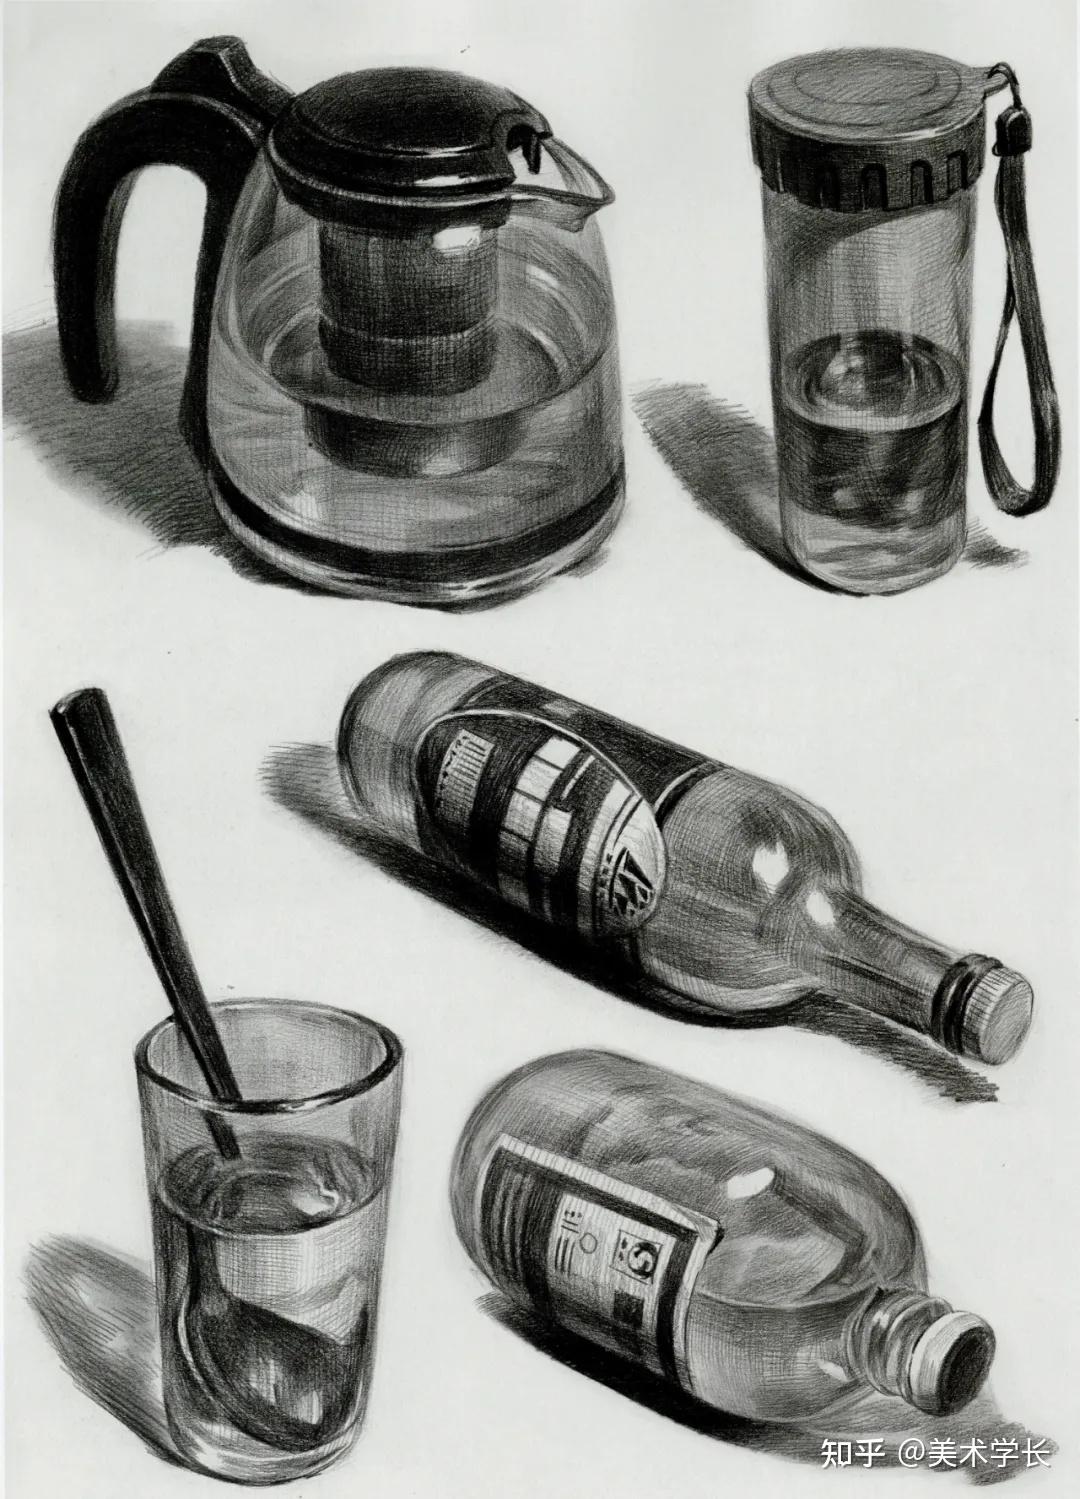 素描圆柱体玻璃杯教程 包括实体图步骤和玻璃杯结构-学习经验分享